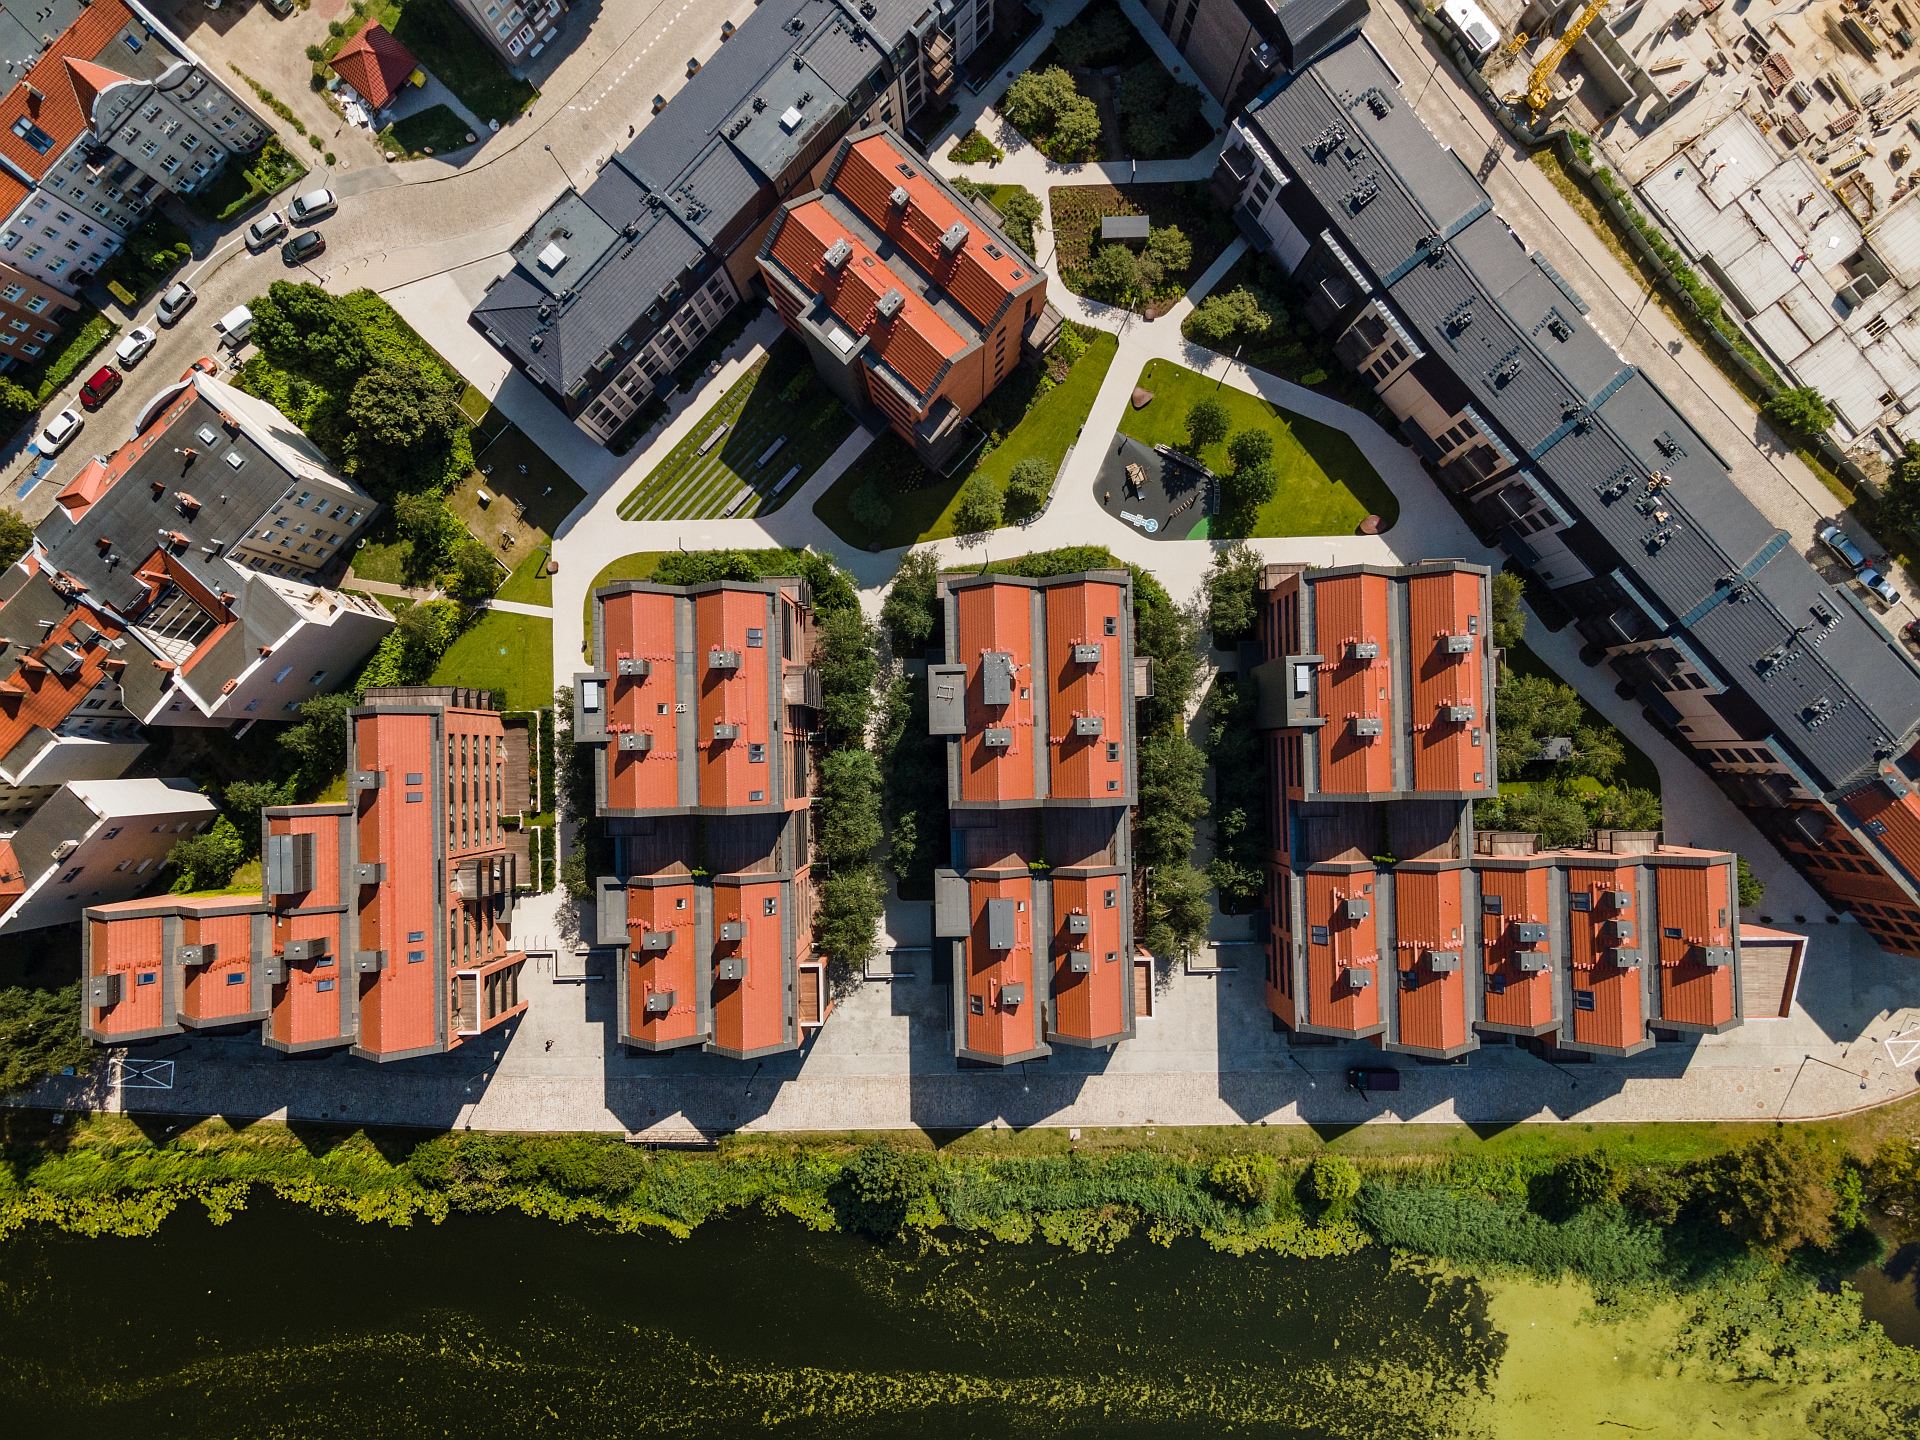 Riverview pierwszym osiedlem mieszkaniowym z certyfikatem LEED w Polsce